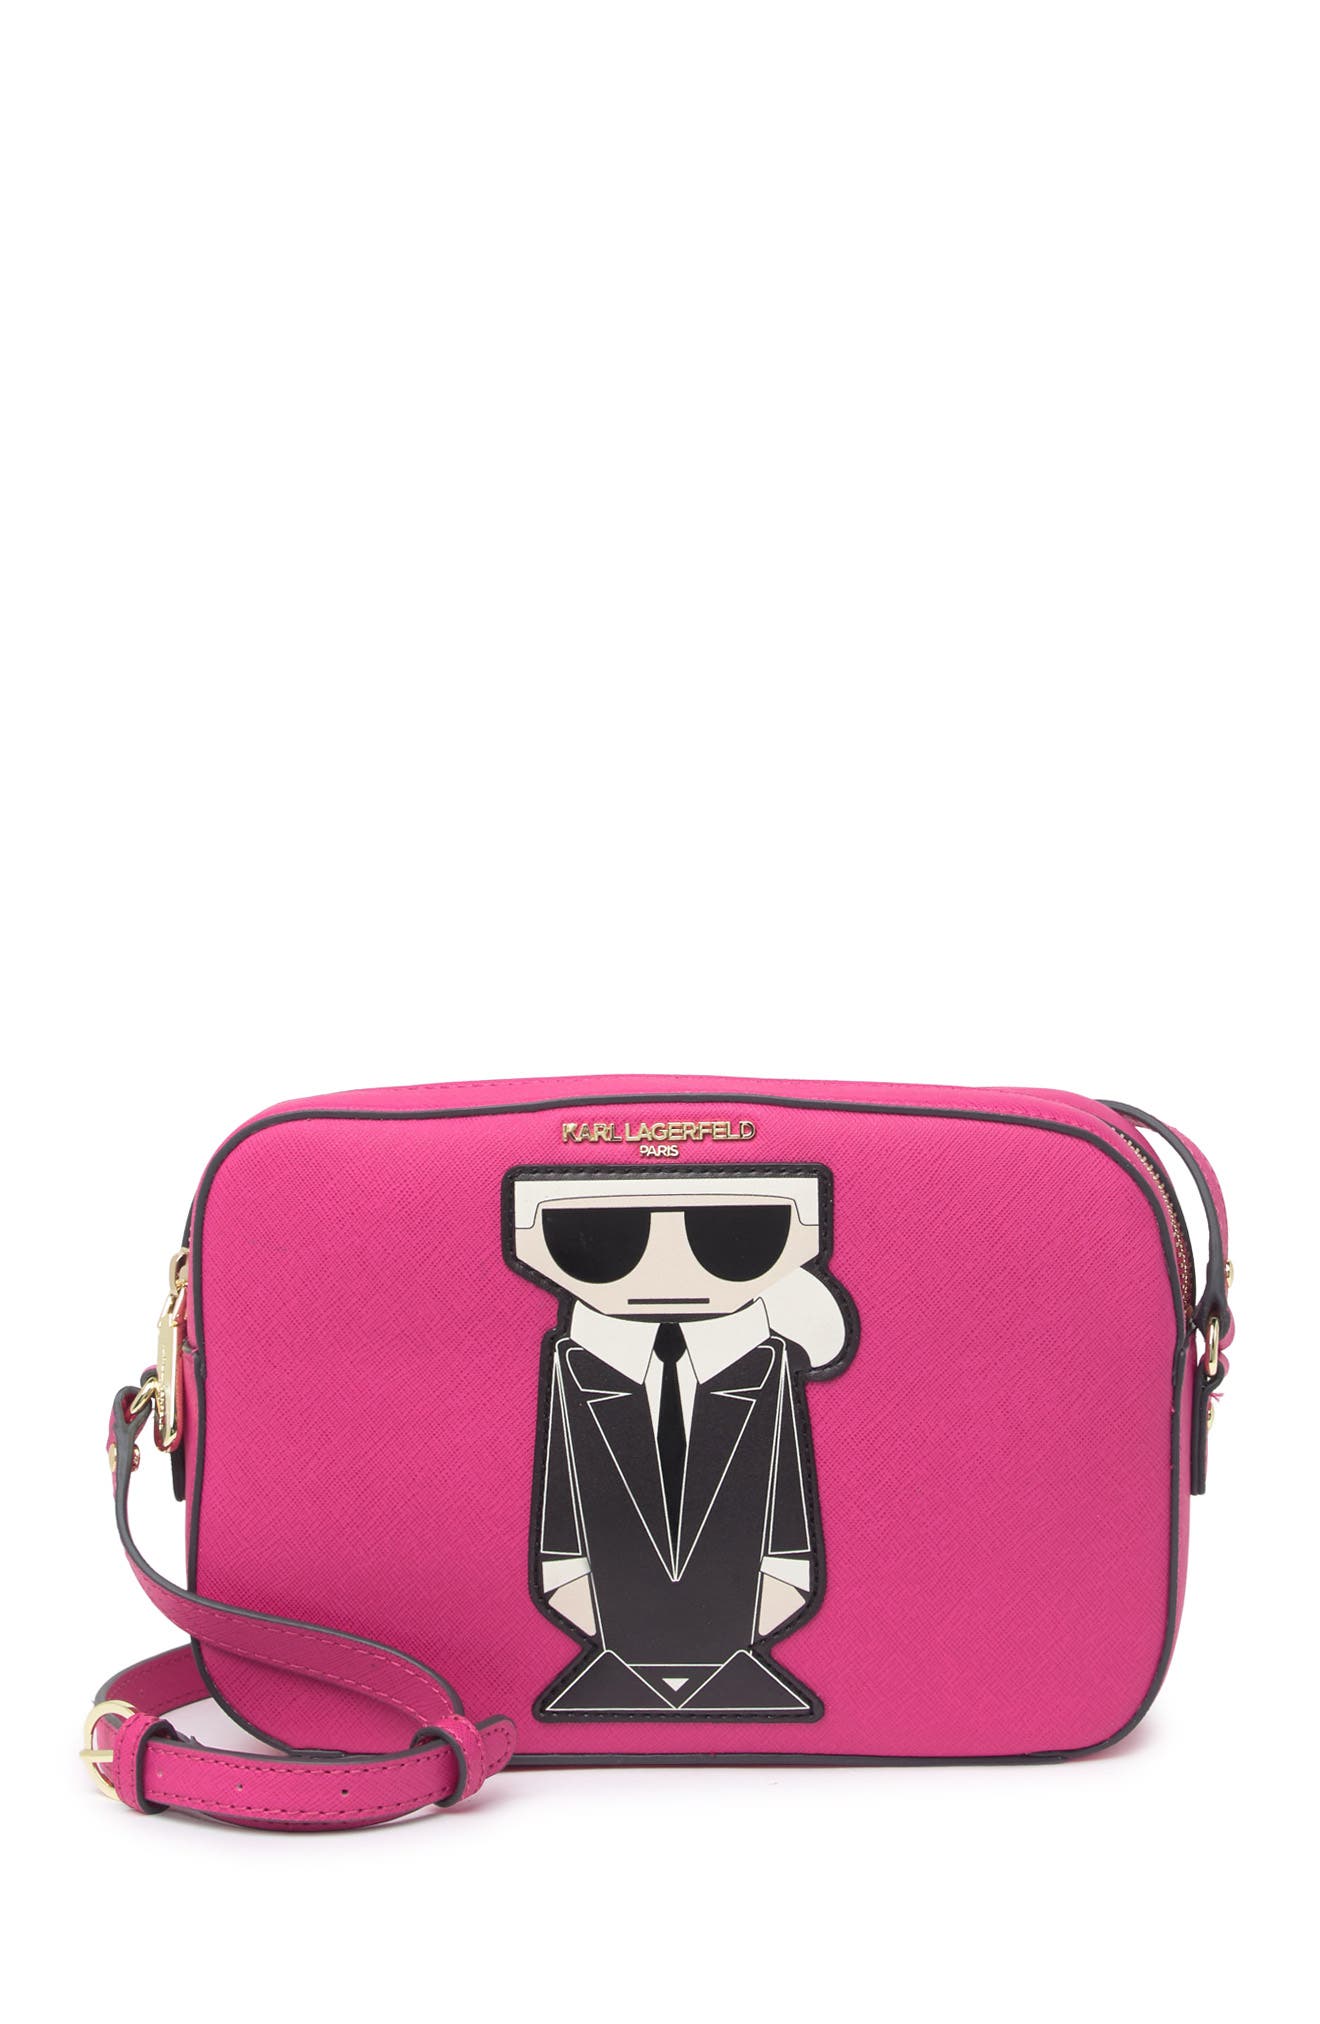 chanel pink and black handbag